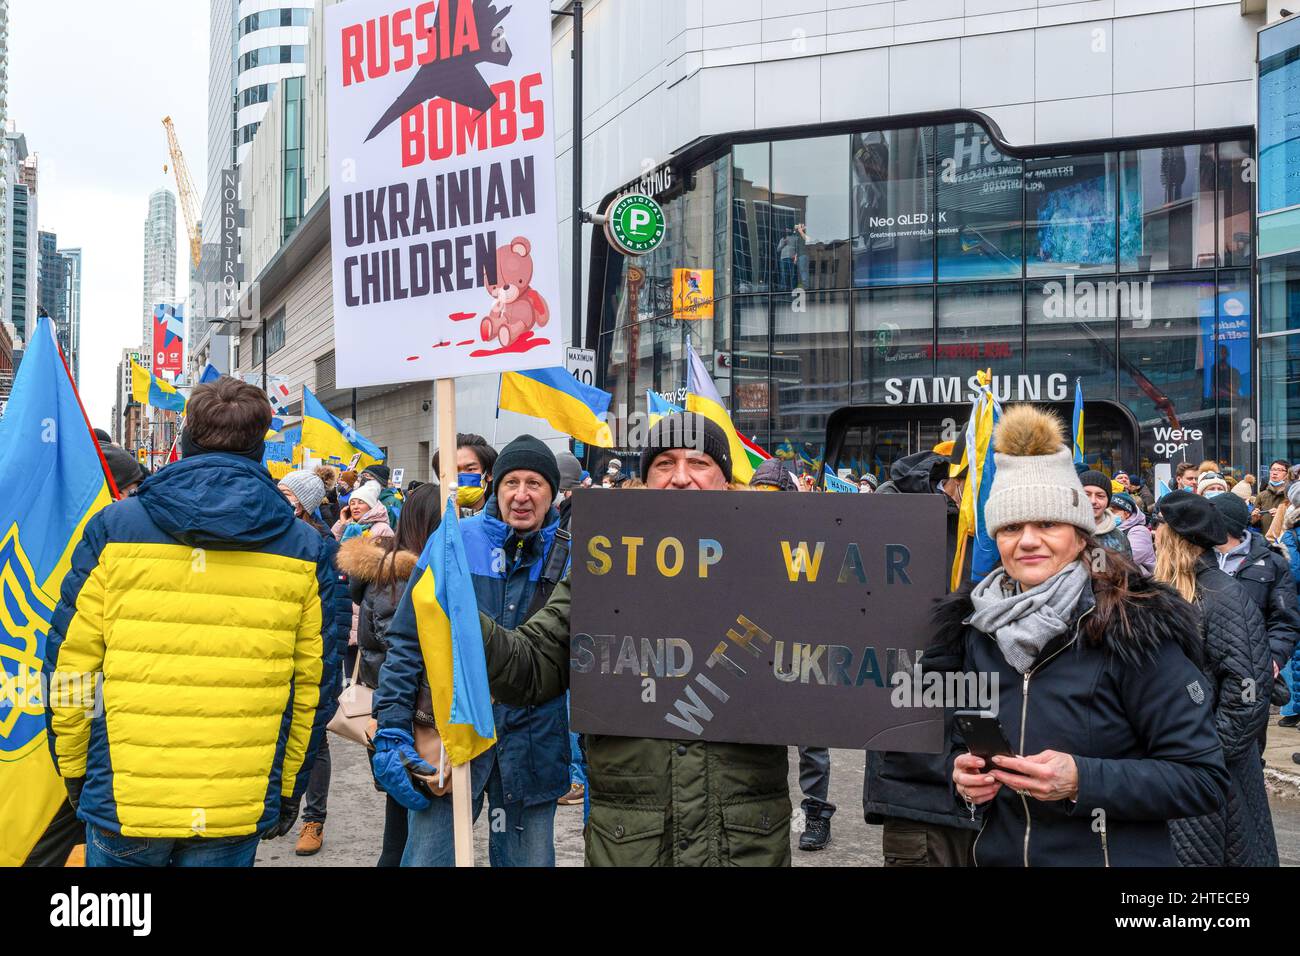 Toronto, Kanada - 27. Februar 2022: An der Demonstration nahmen die Menschen mit Schildern mit den Aufschrift „ Russland bombardiert ukrainische Kinder“ und „Stoppt den Krieg“ Teil. Stockfoto